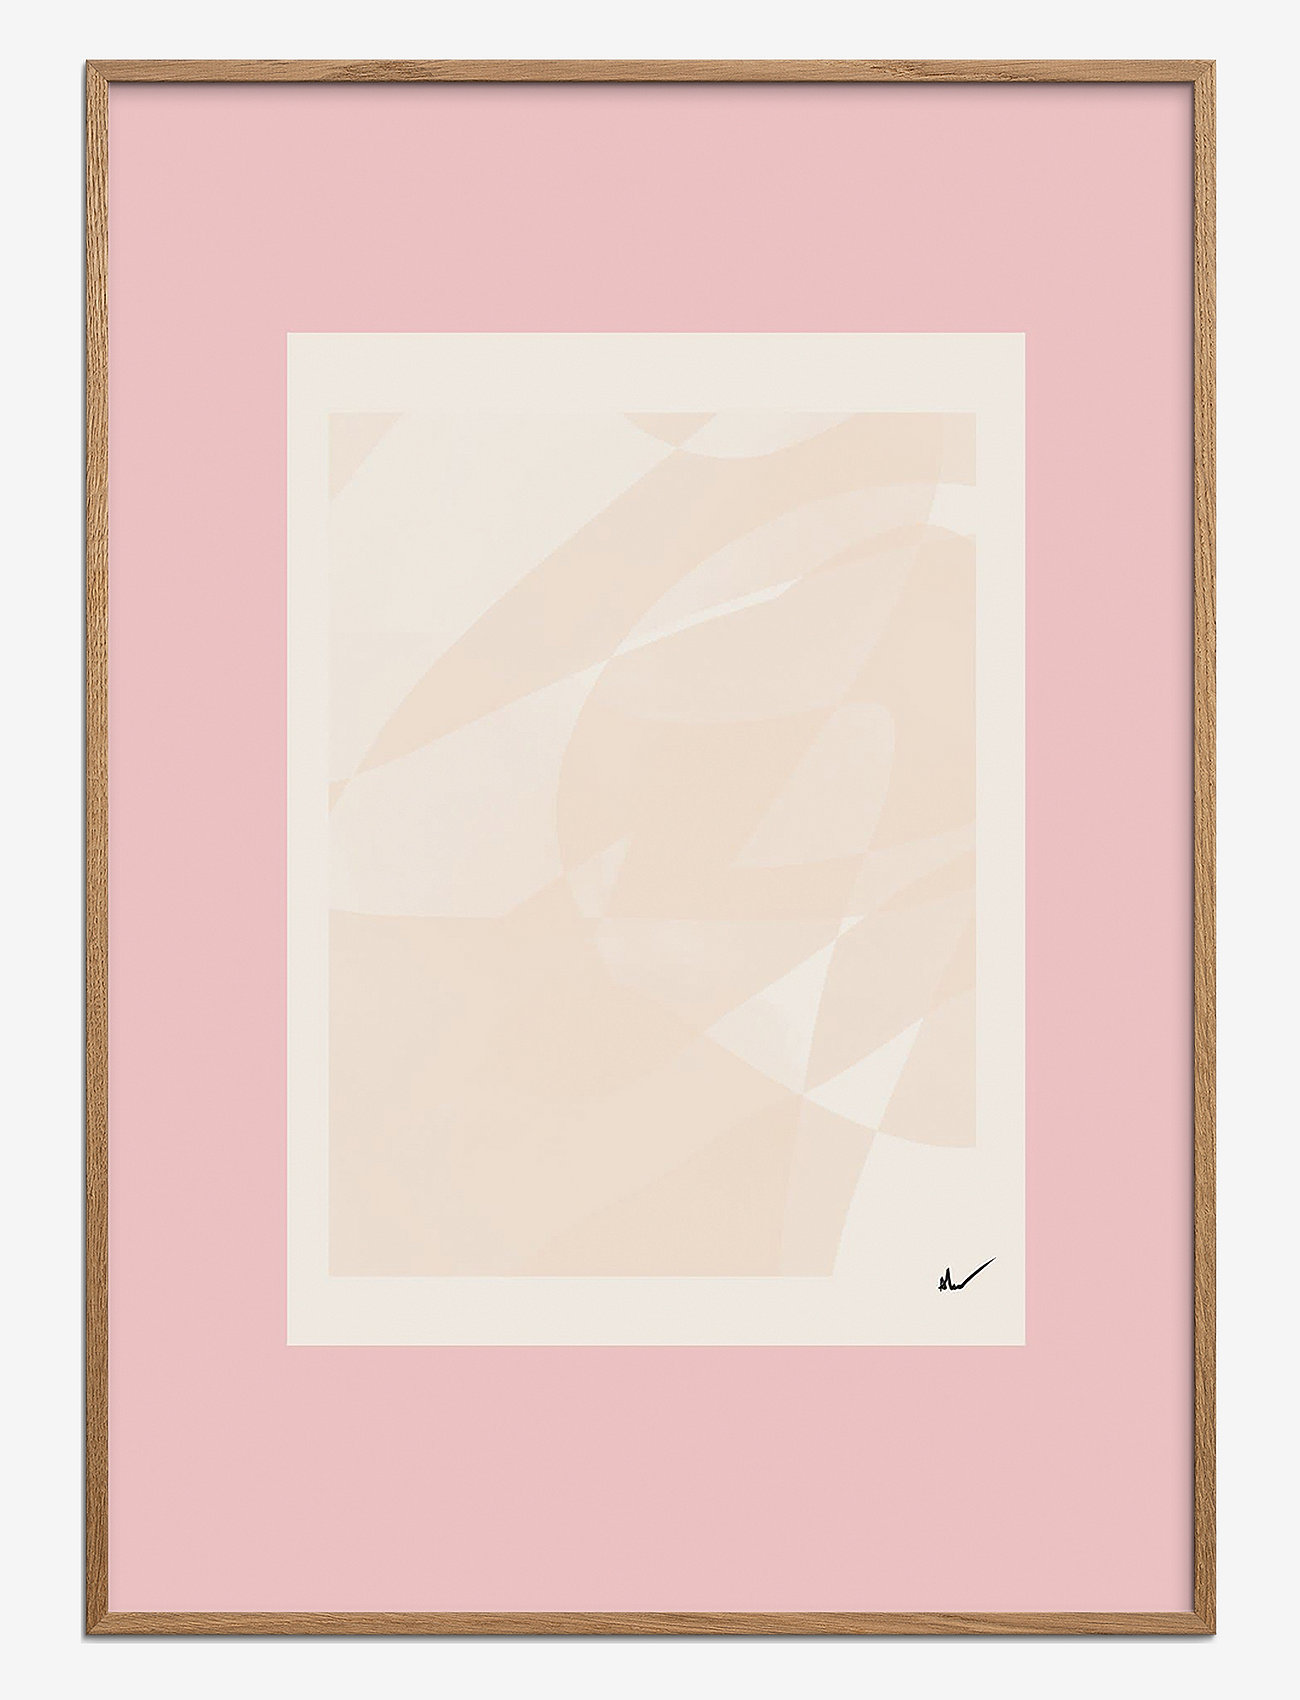 Poster & Frame - N. Atelier - Rouge I - laveste priser - multi - 0